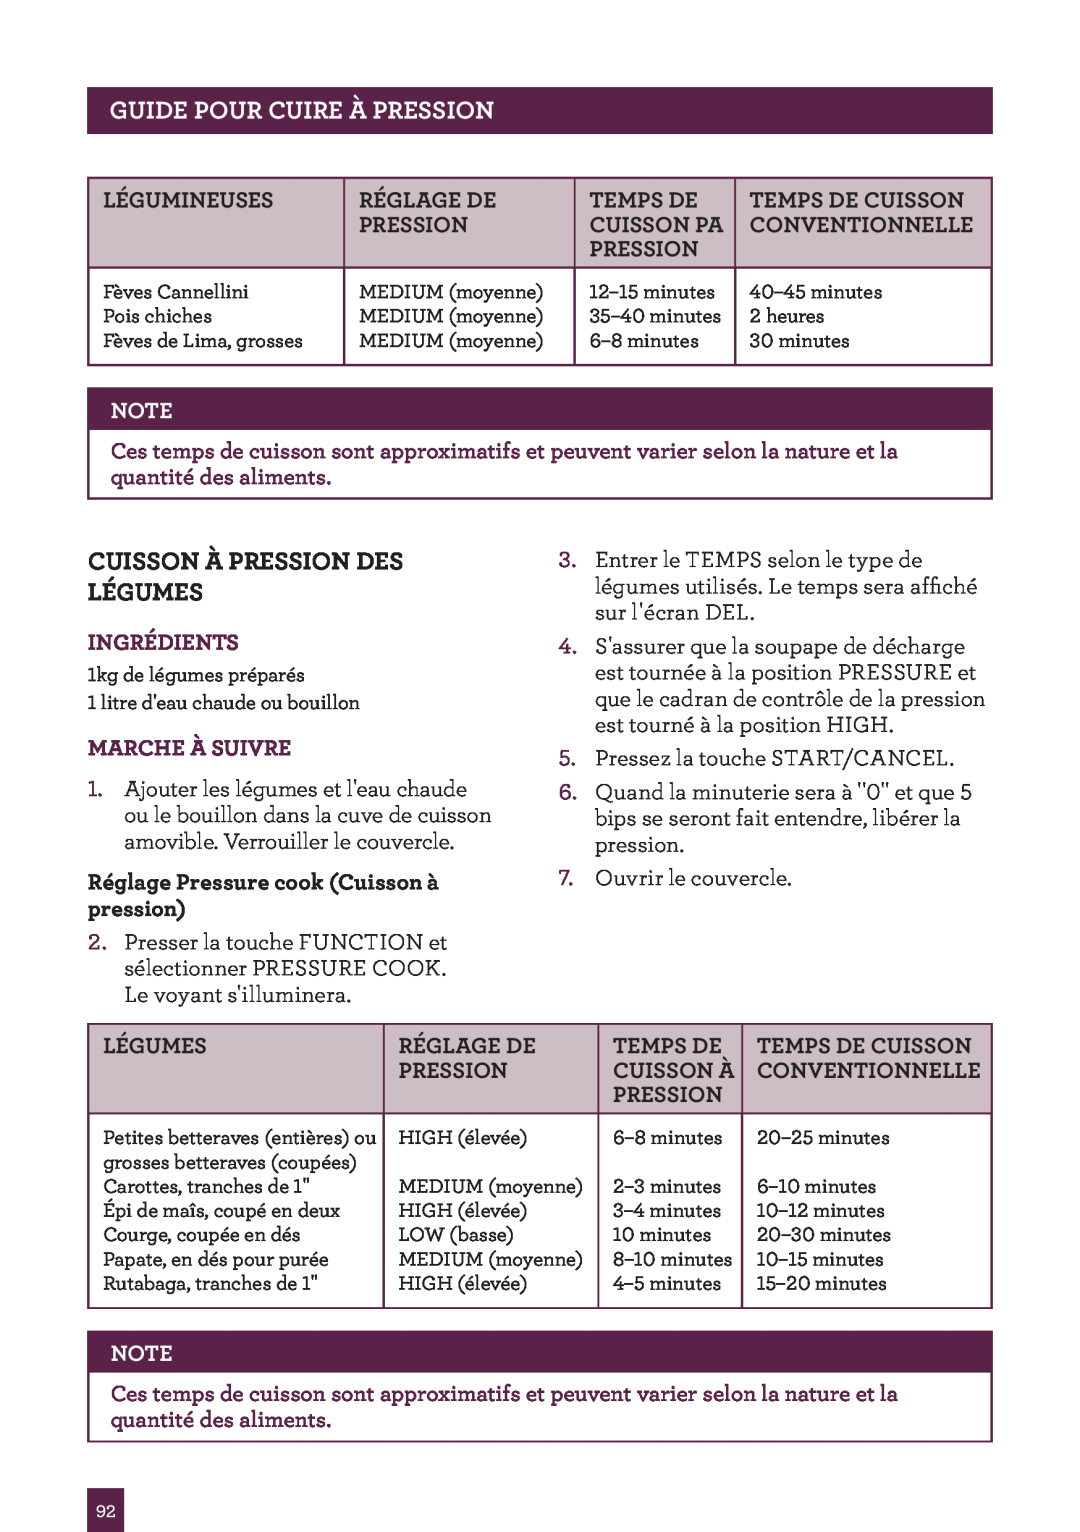 Breville BPR600XL Issue - A12 manual Cuisson À Pression Des Légumes, Pageguideheaderpour Cuire..... À Pression, Ingrédients 